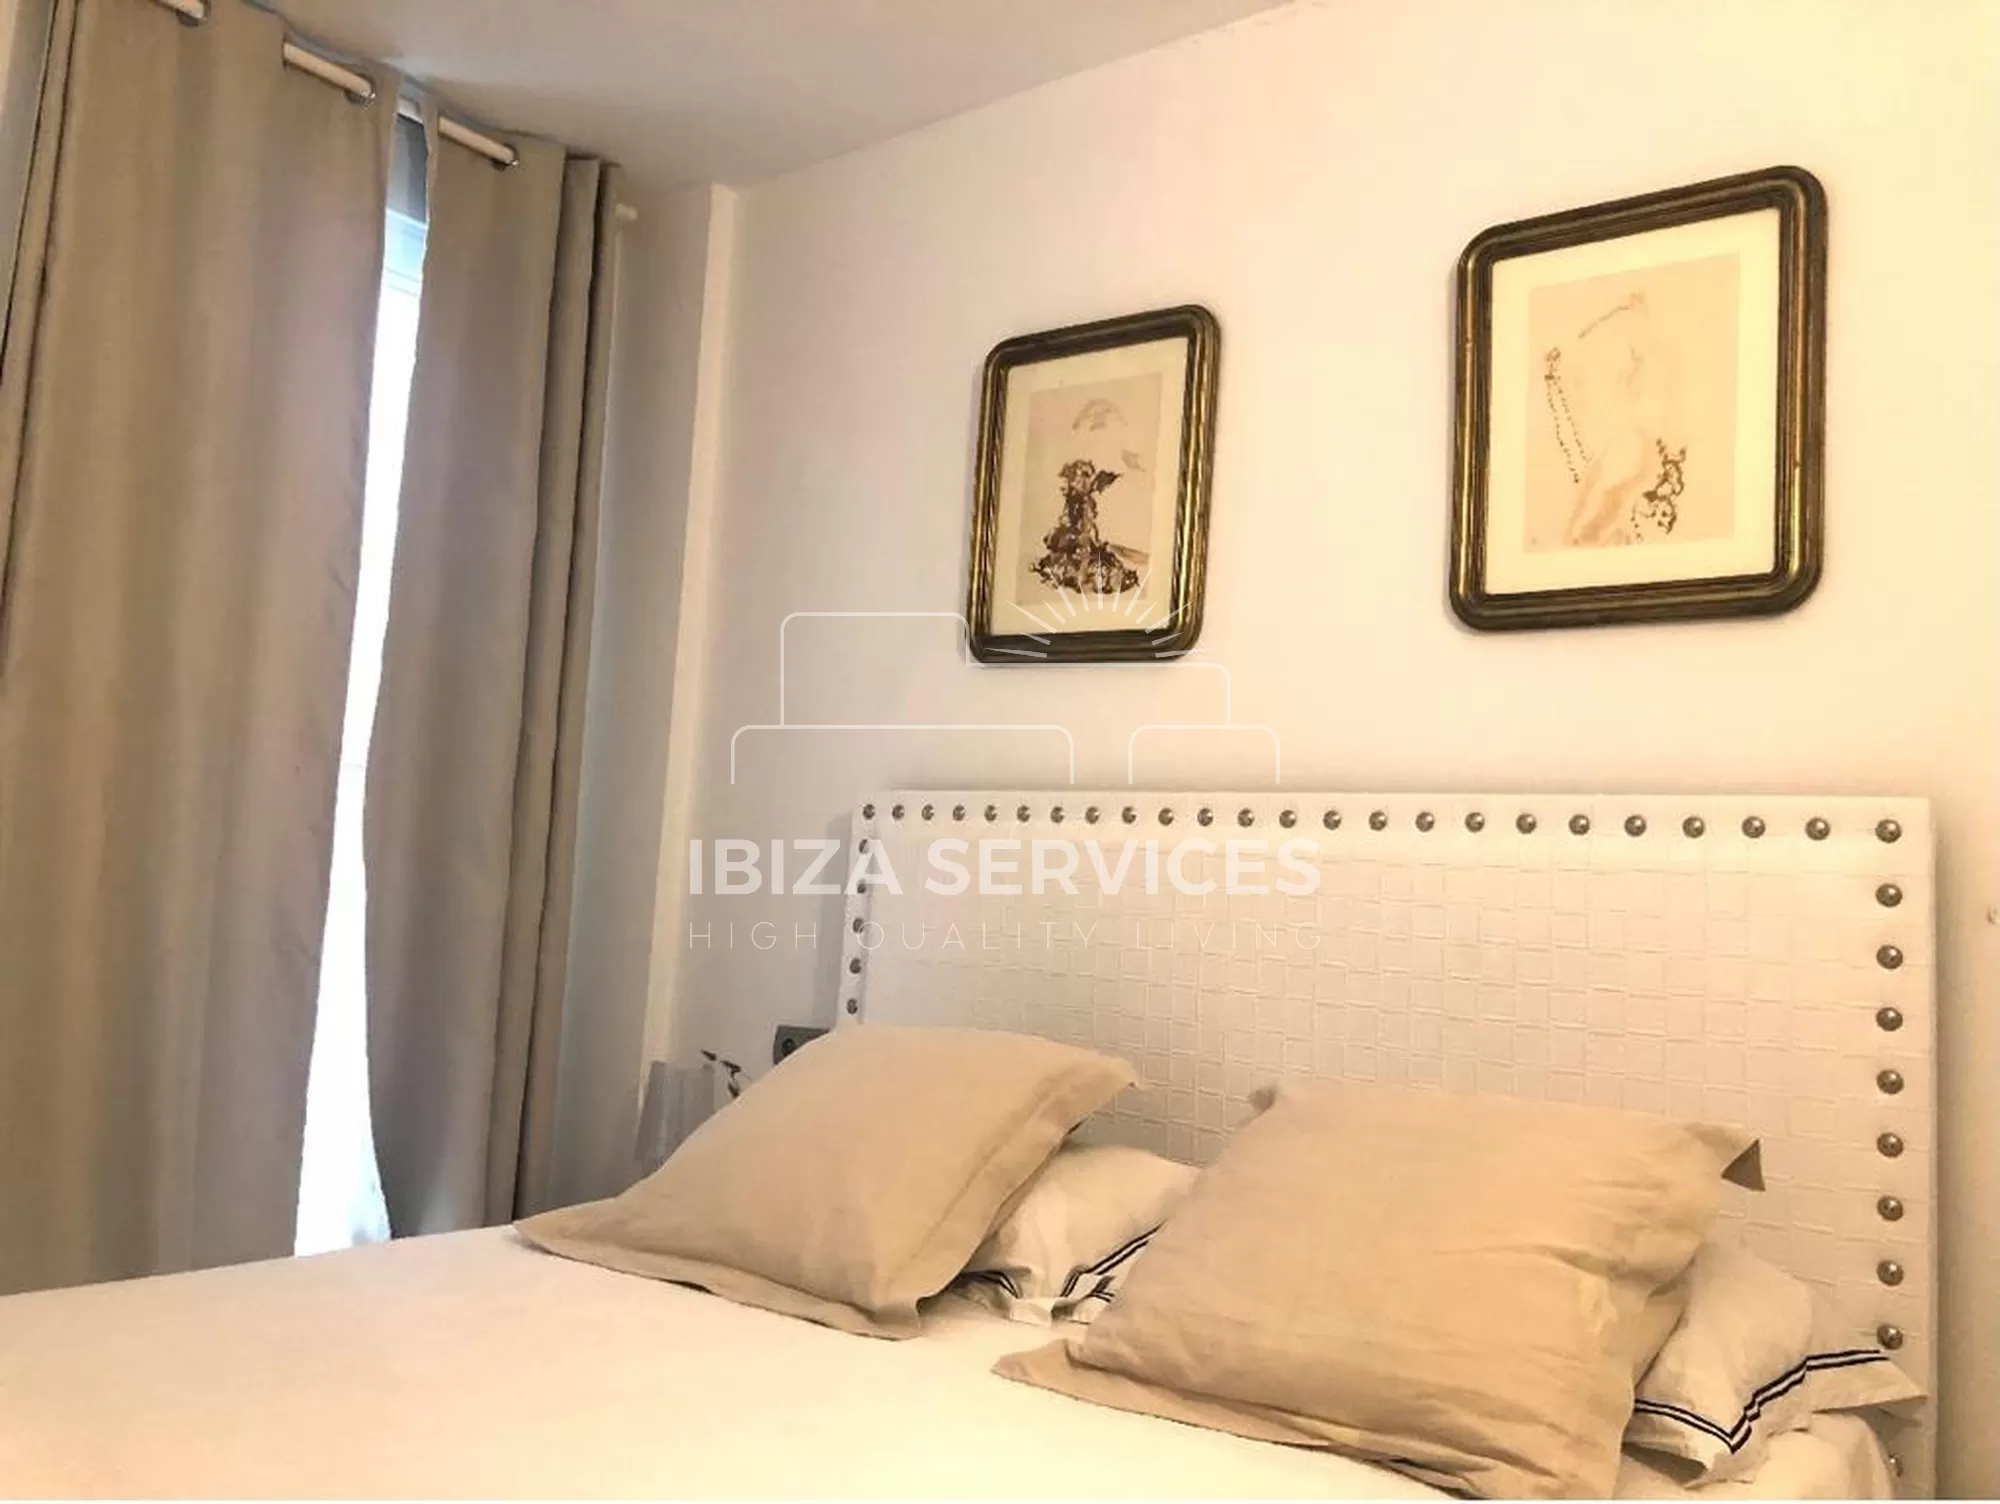 Seizoensverhuur van een appartement met 1 slaapkamer in Botafoch, Ibiza